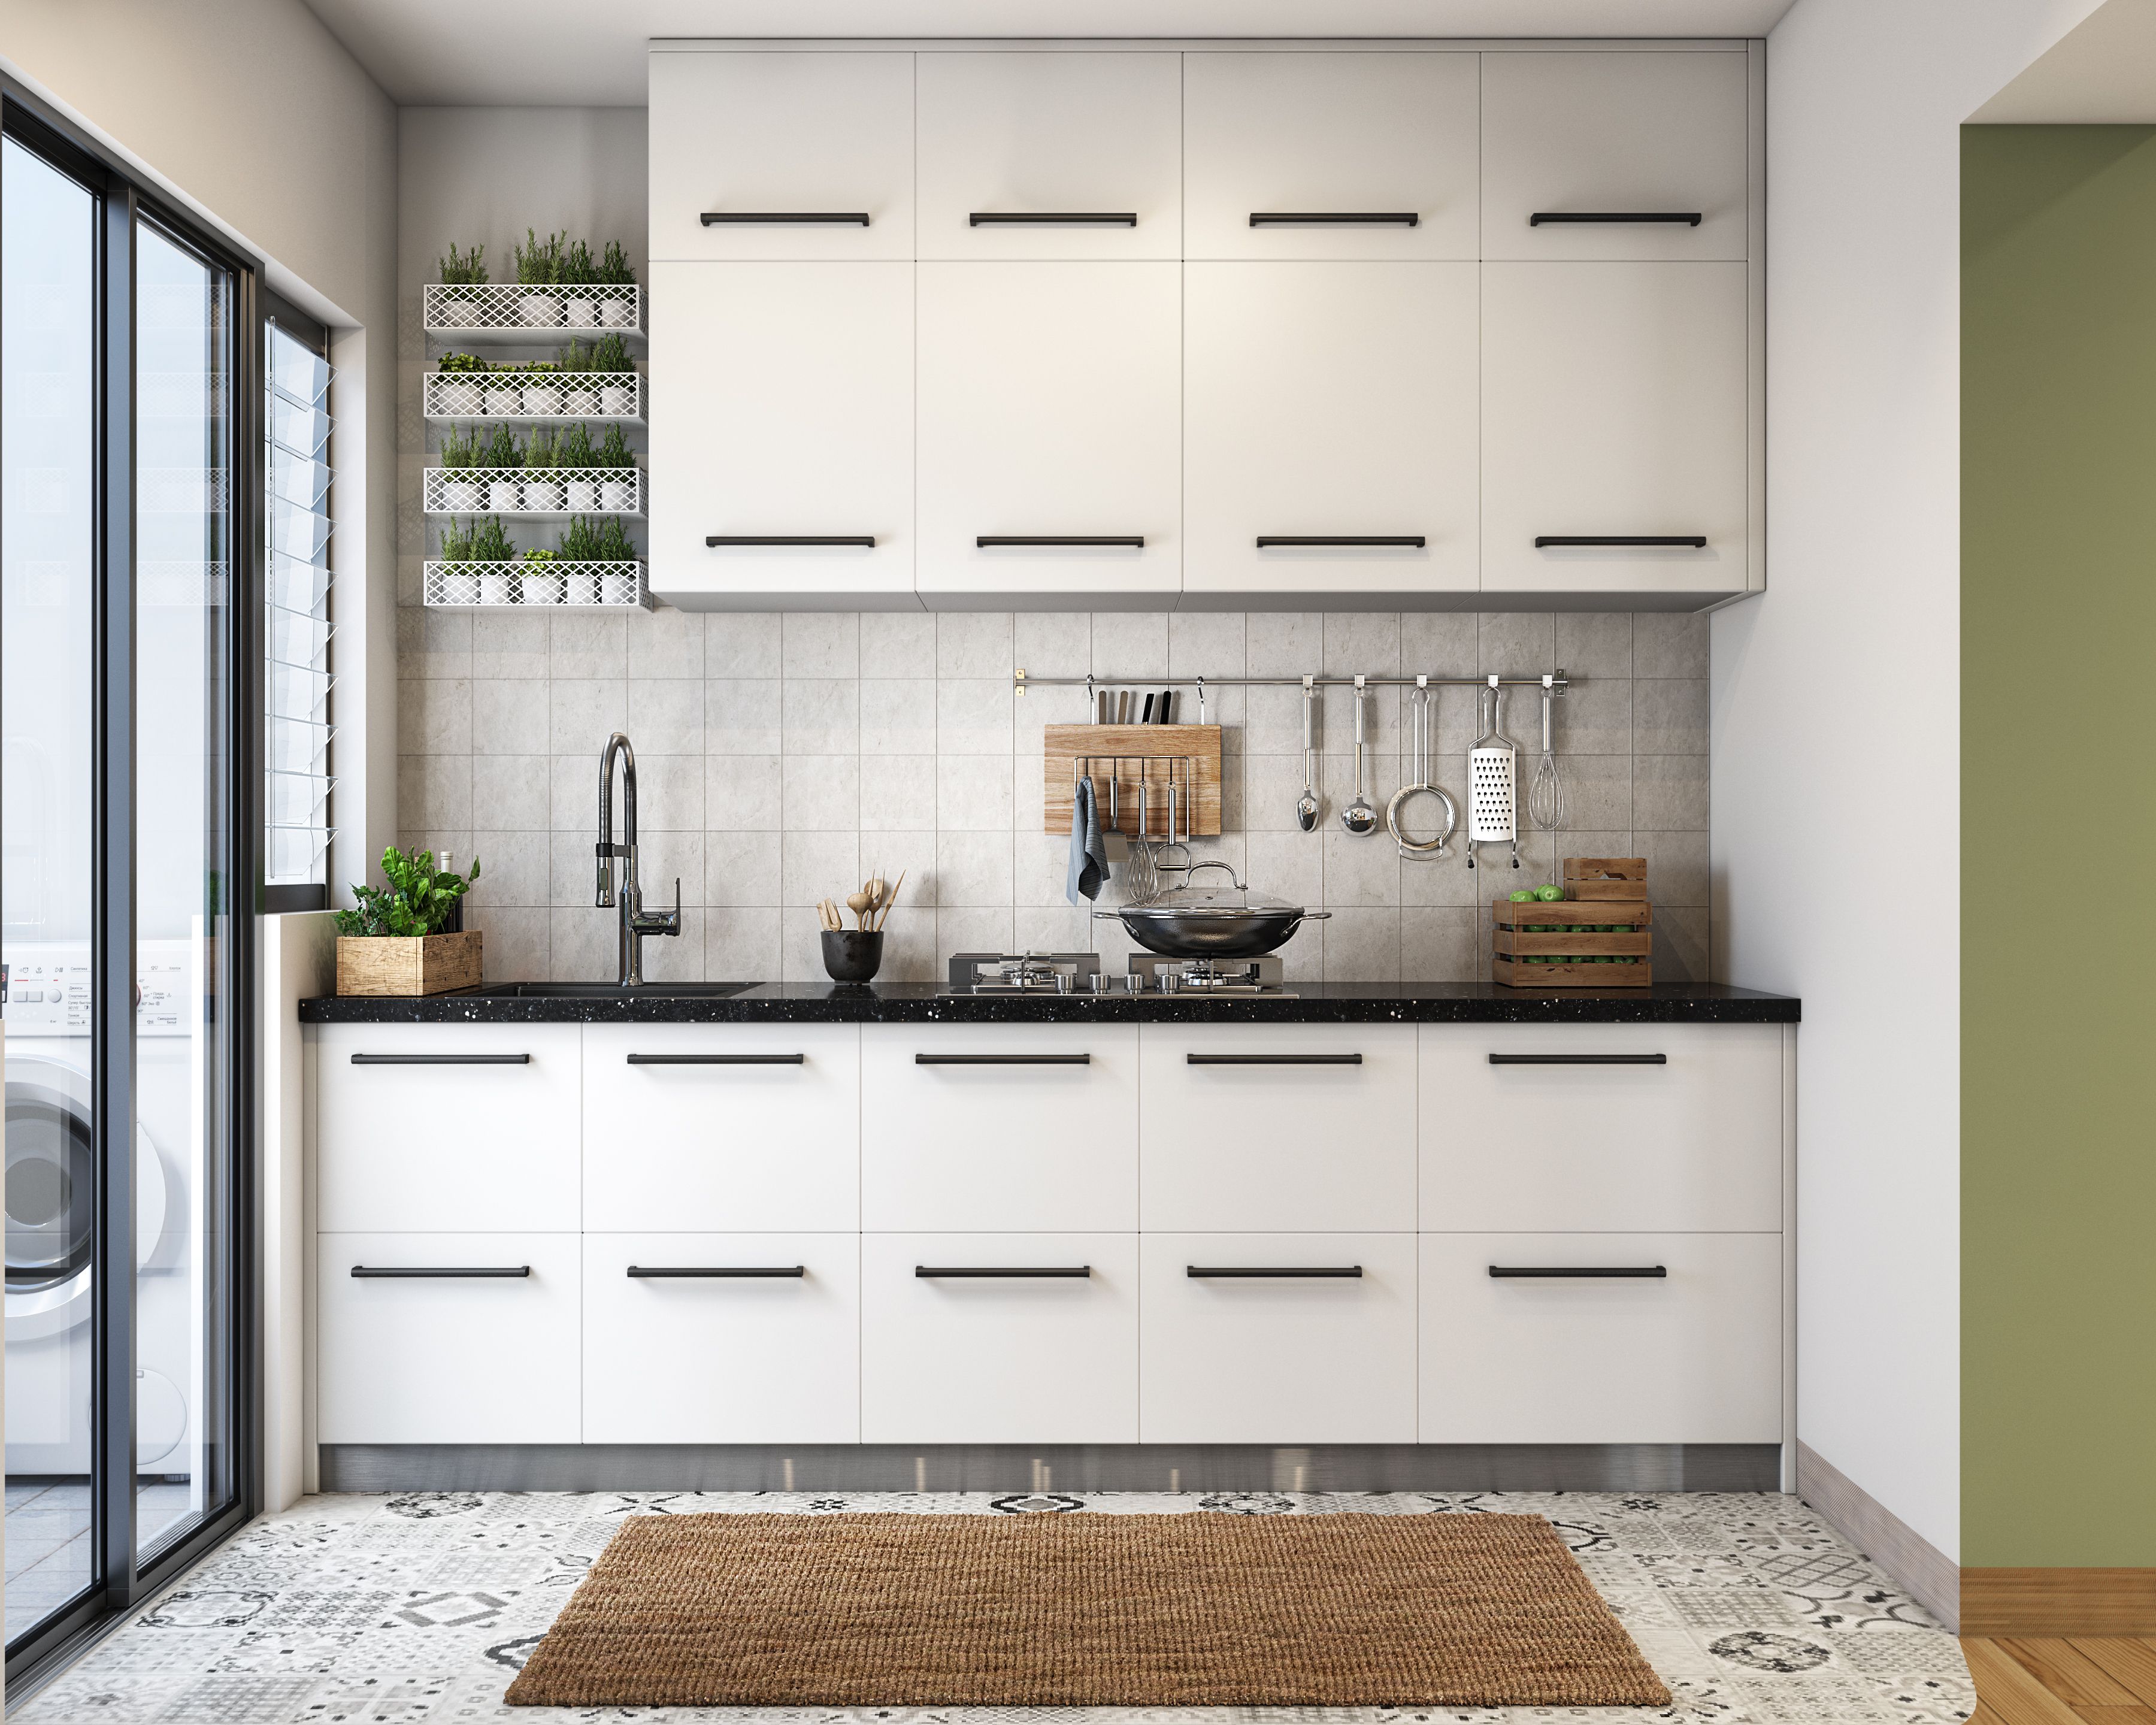 Modern Modular Parallel Kitchen Cabinet Design